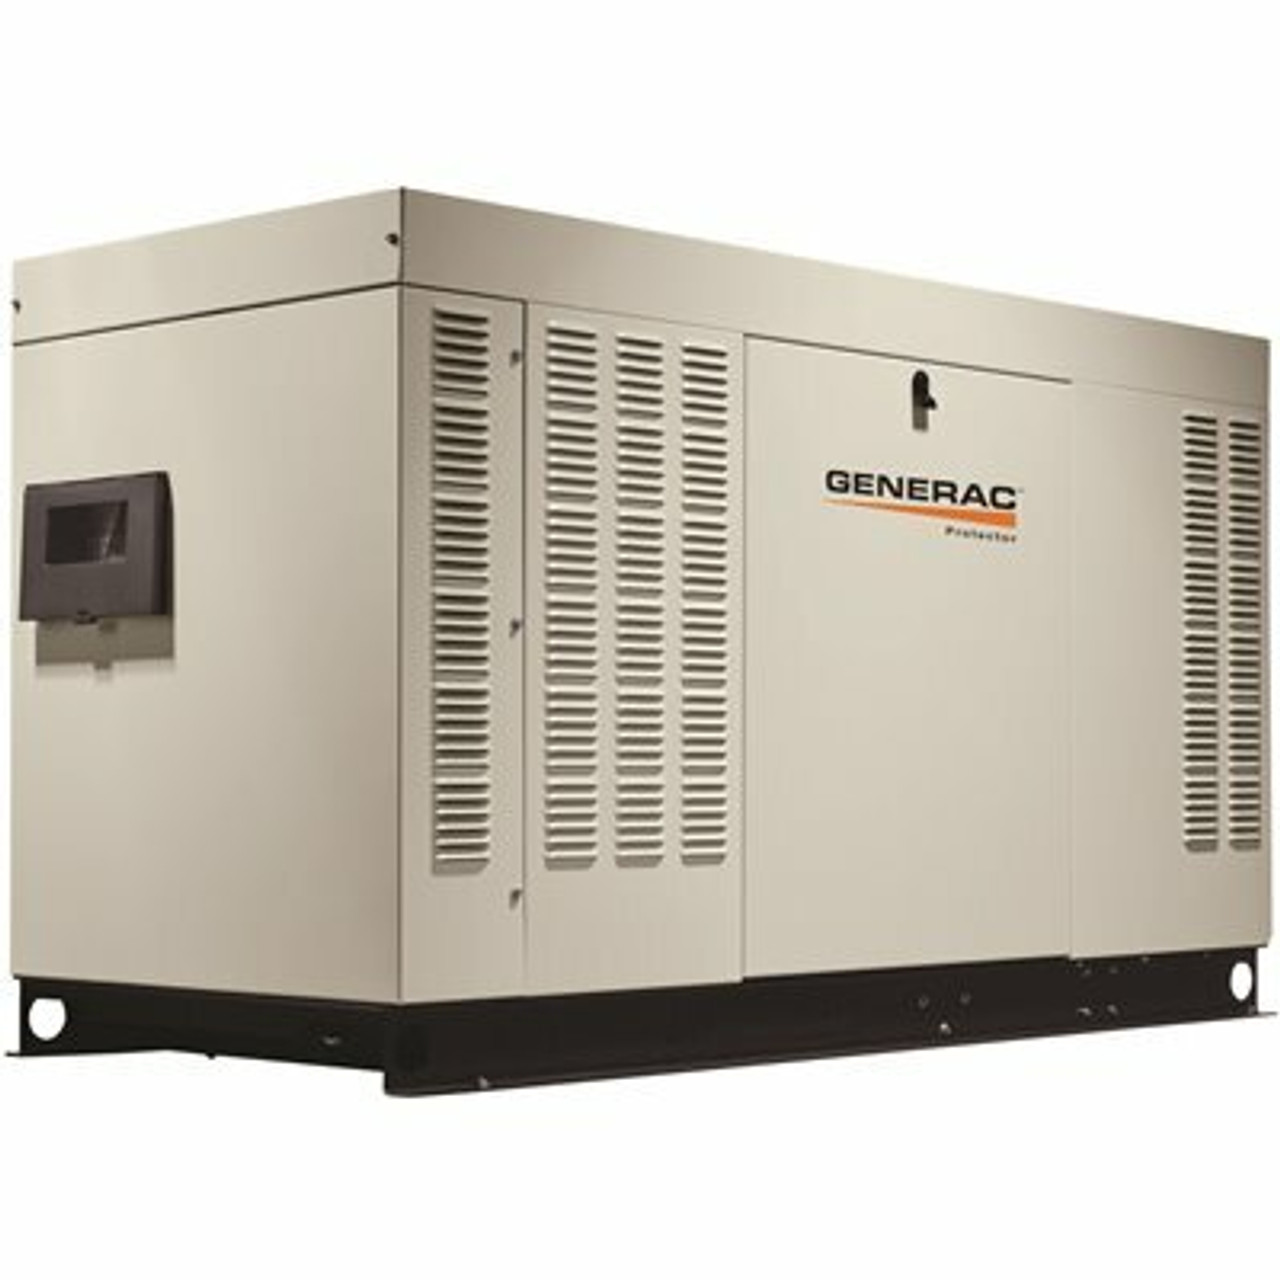 Generac 45,000-Watt 120-Volt/240-Volt Liquid Cooled Standby Generator Single Phase With Aluminum Enclosure - 206105900